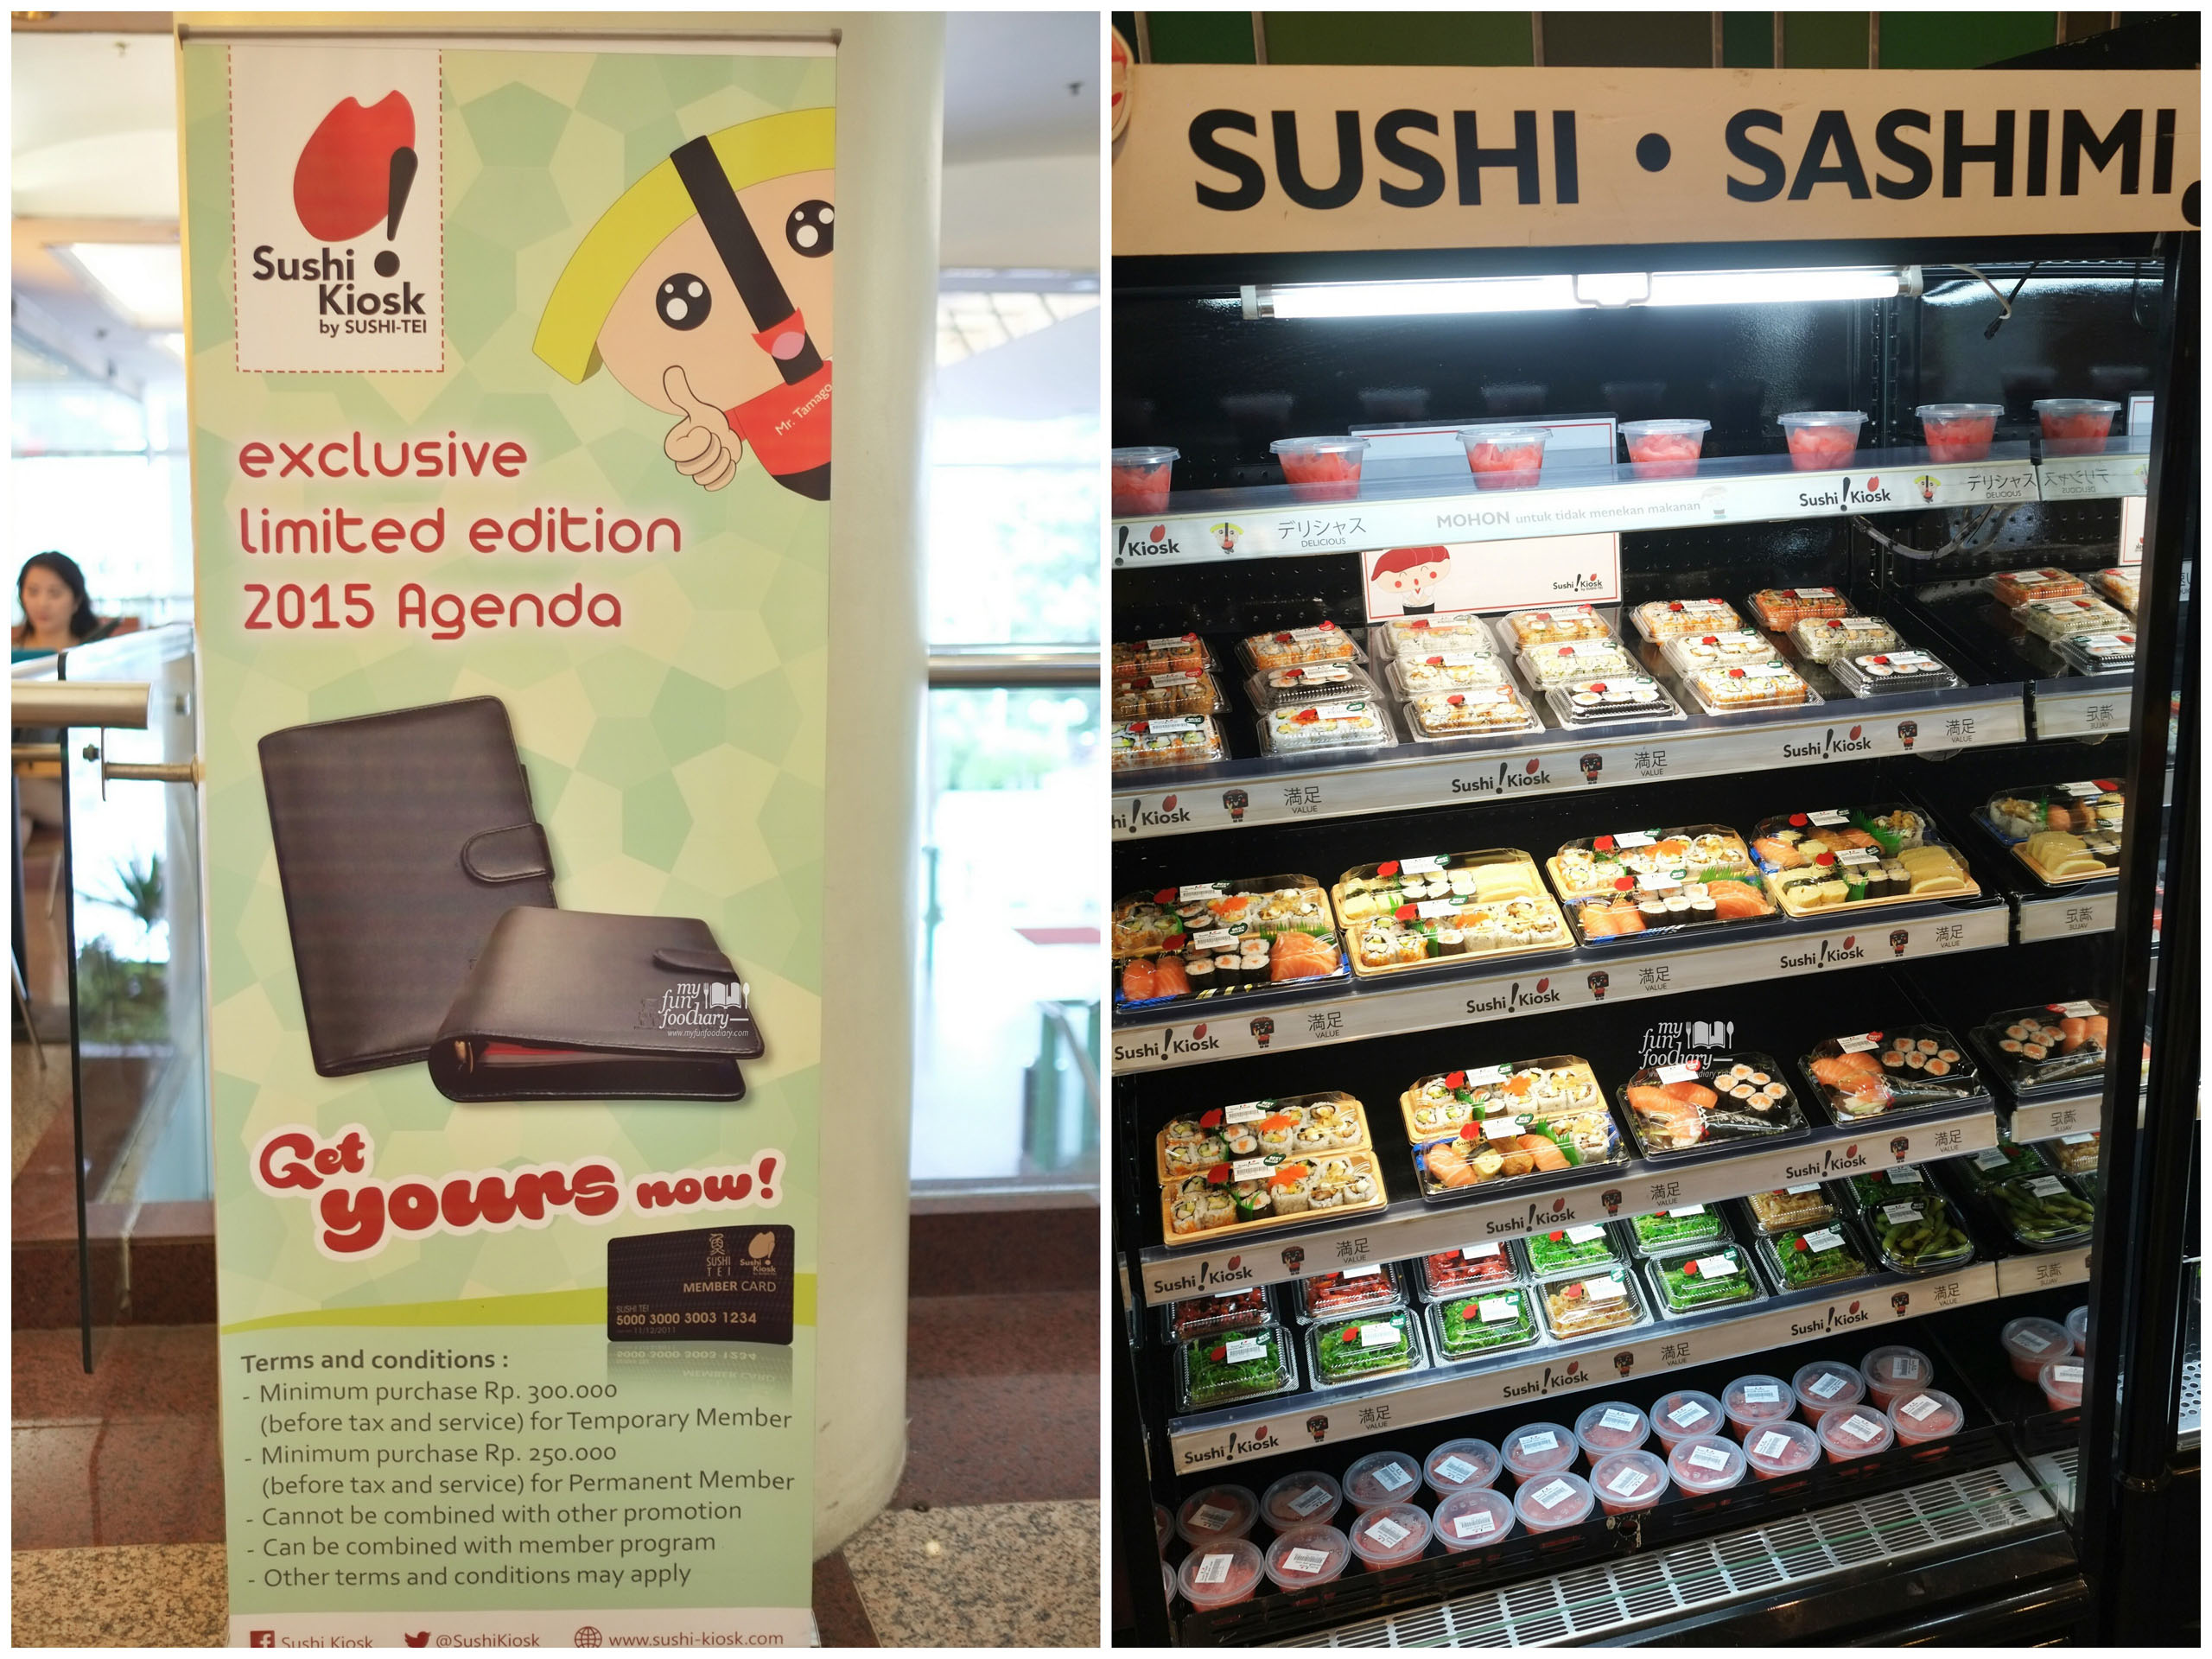 Sushi Sashimi at Sushi Kiosk by Sushi Tei - by Myfunfoodiary